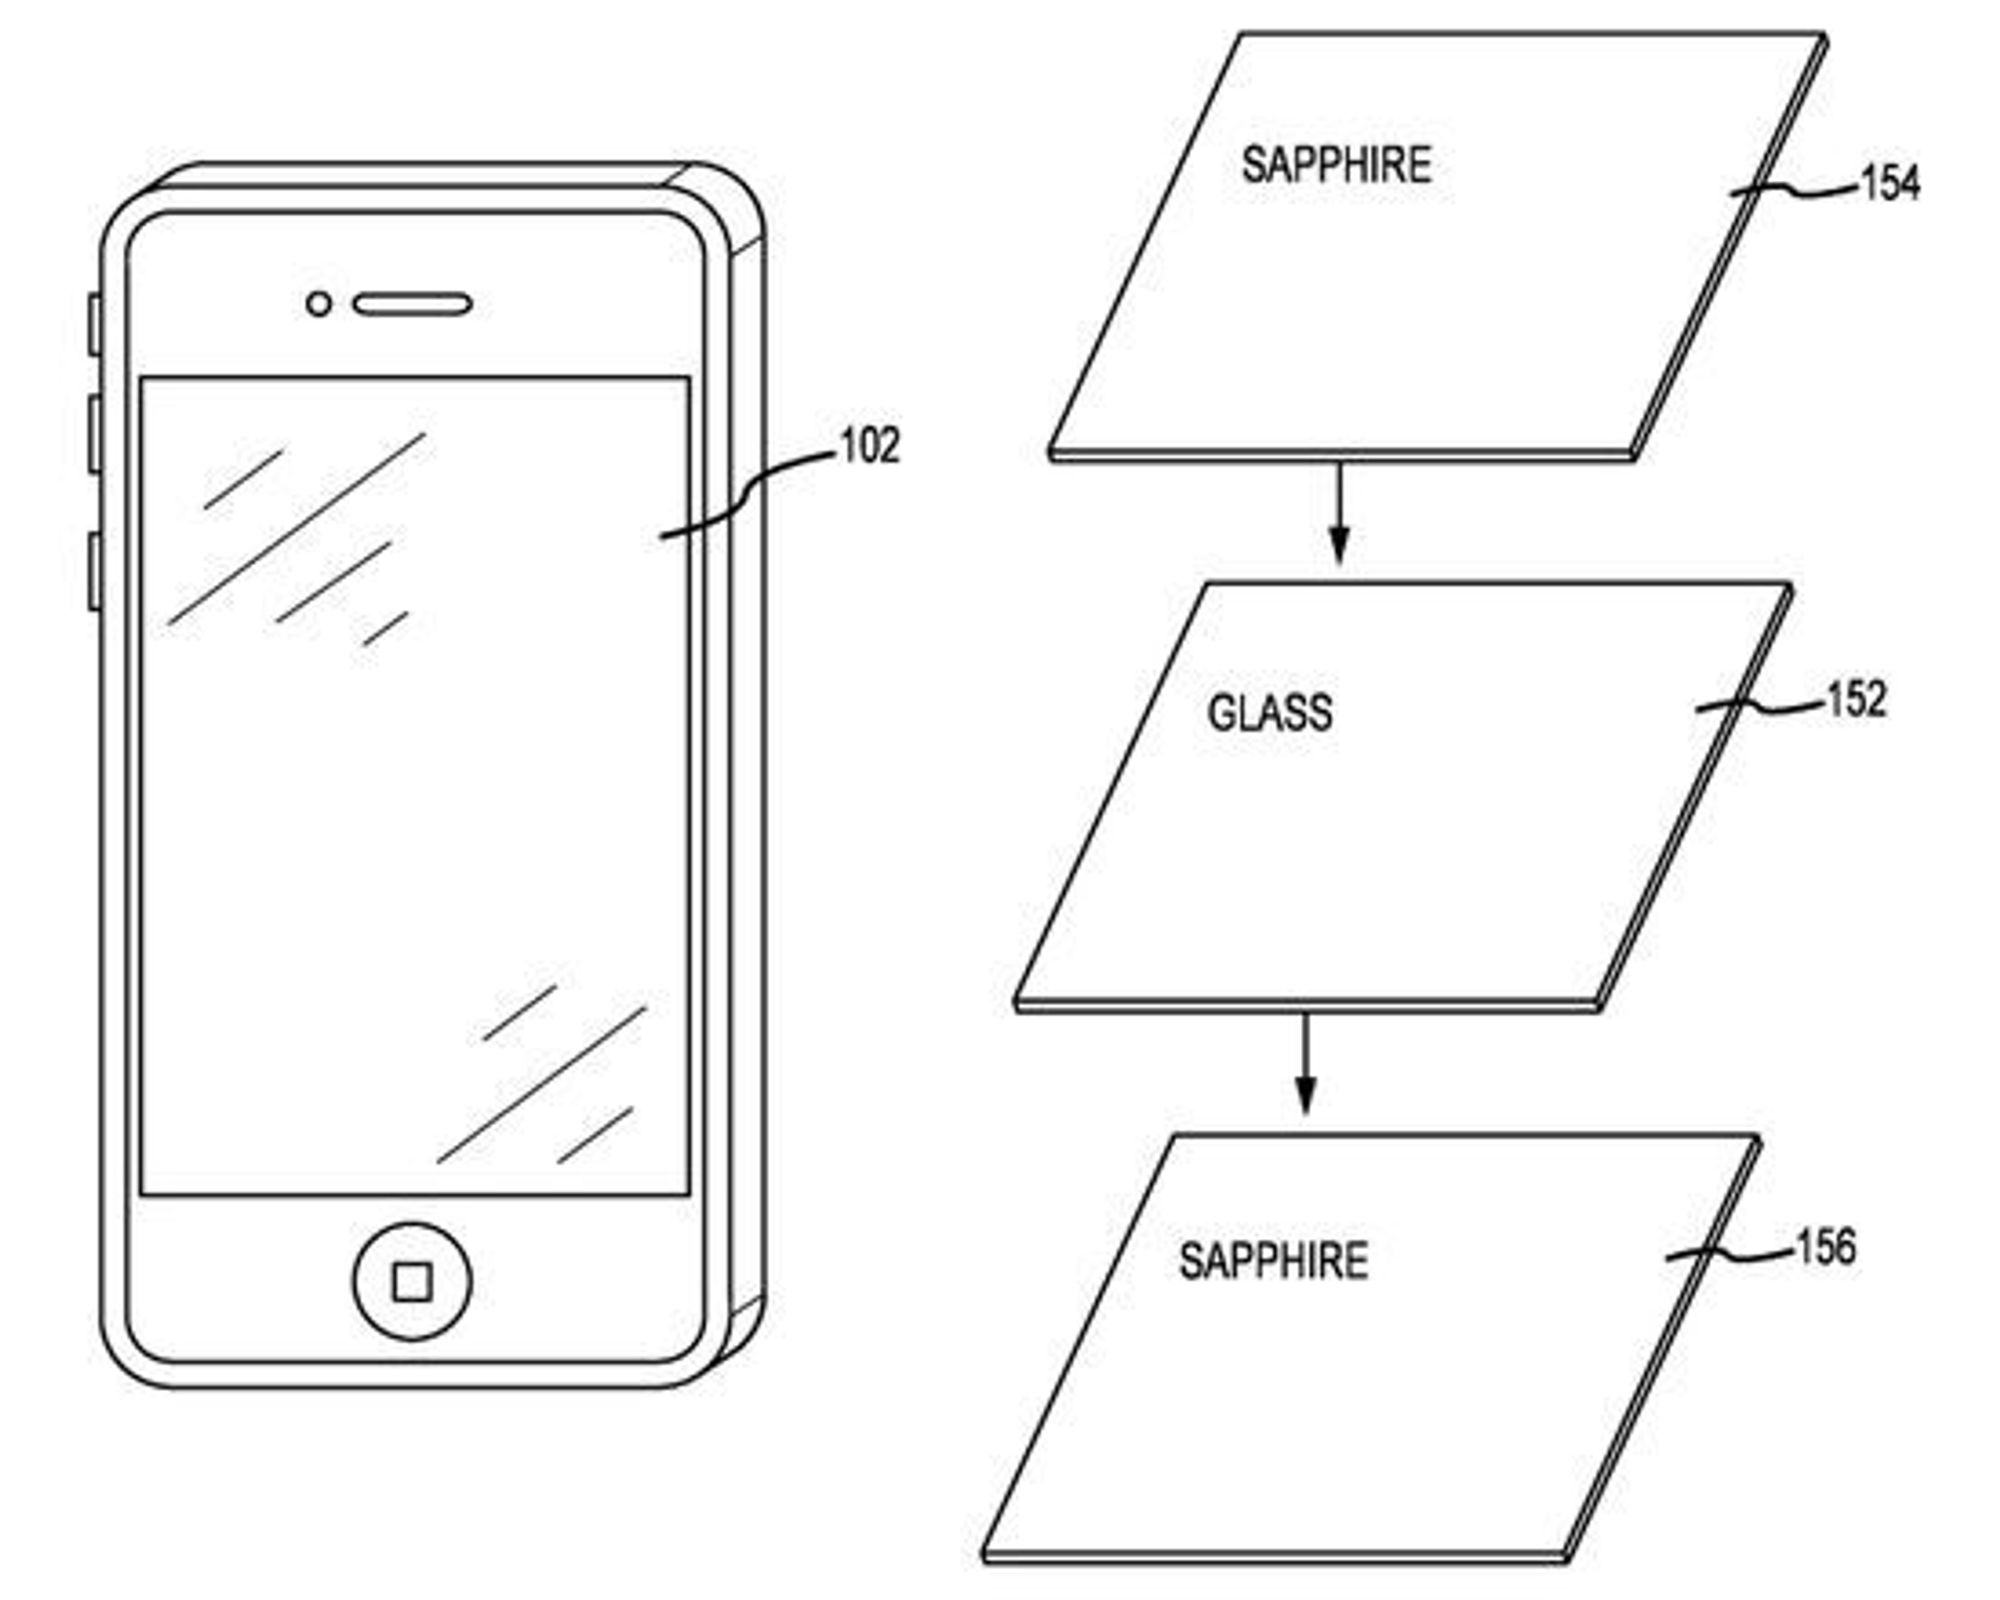 Illustrasjoner fra Apples søknad om patent på safirlaminat.